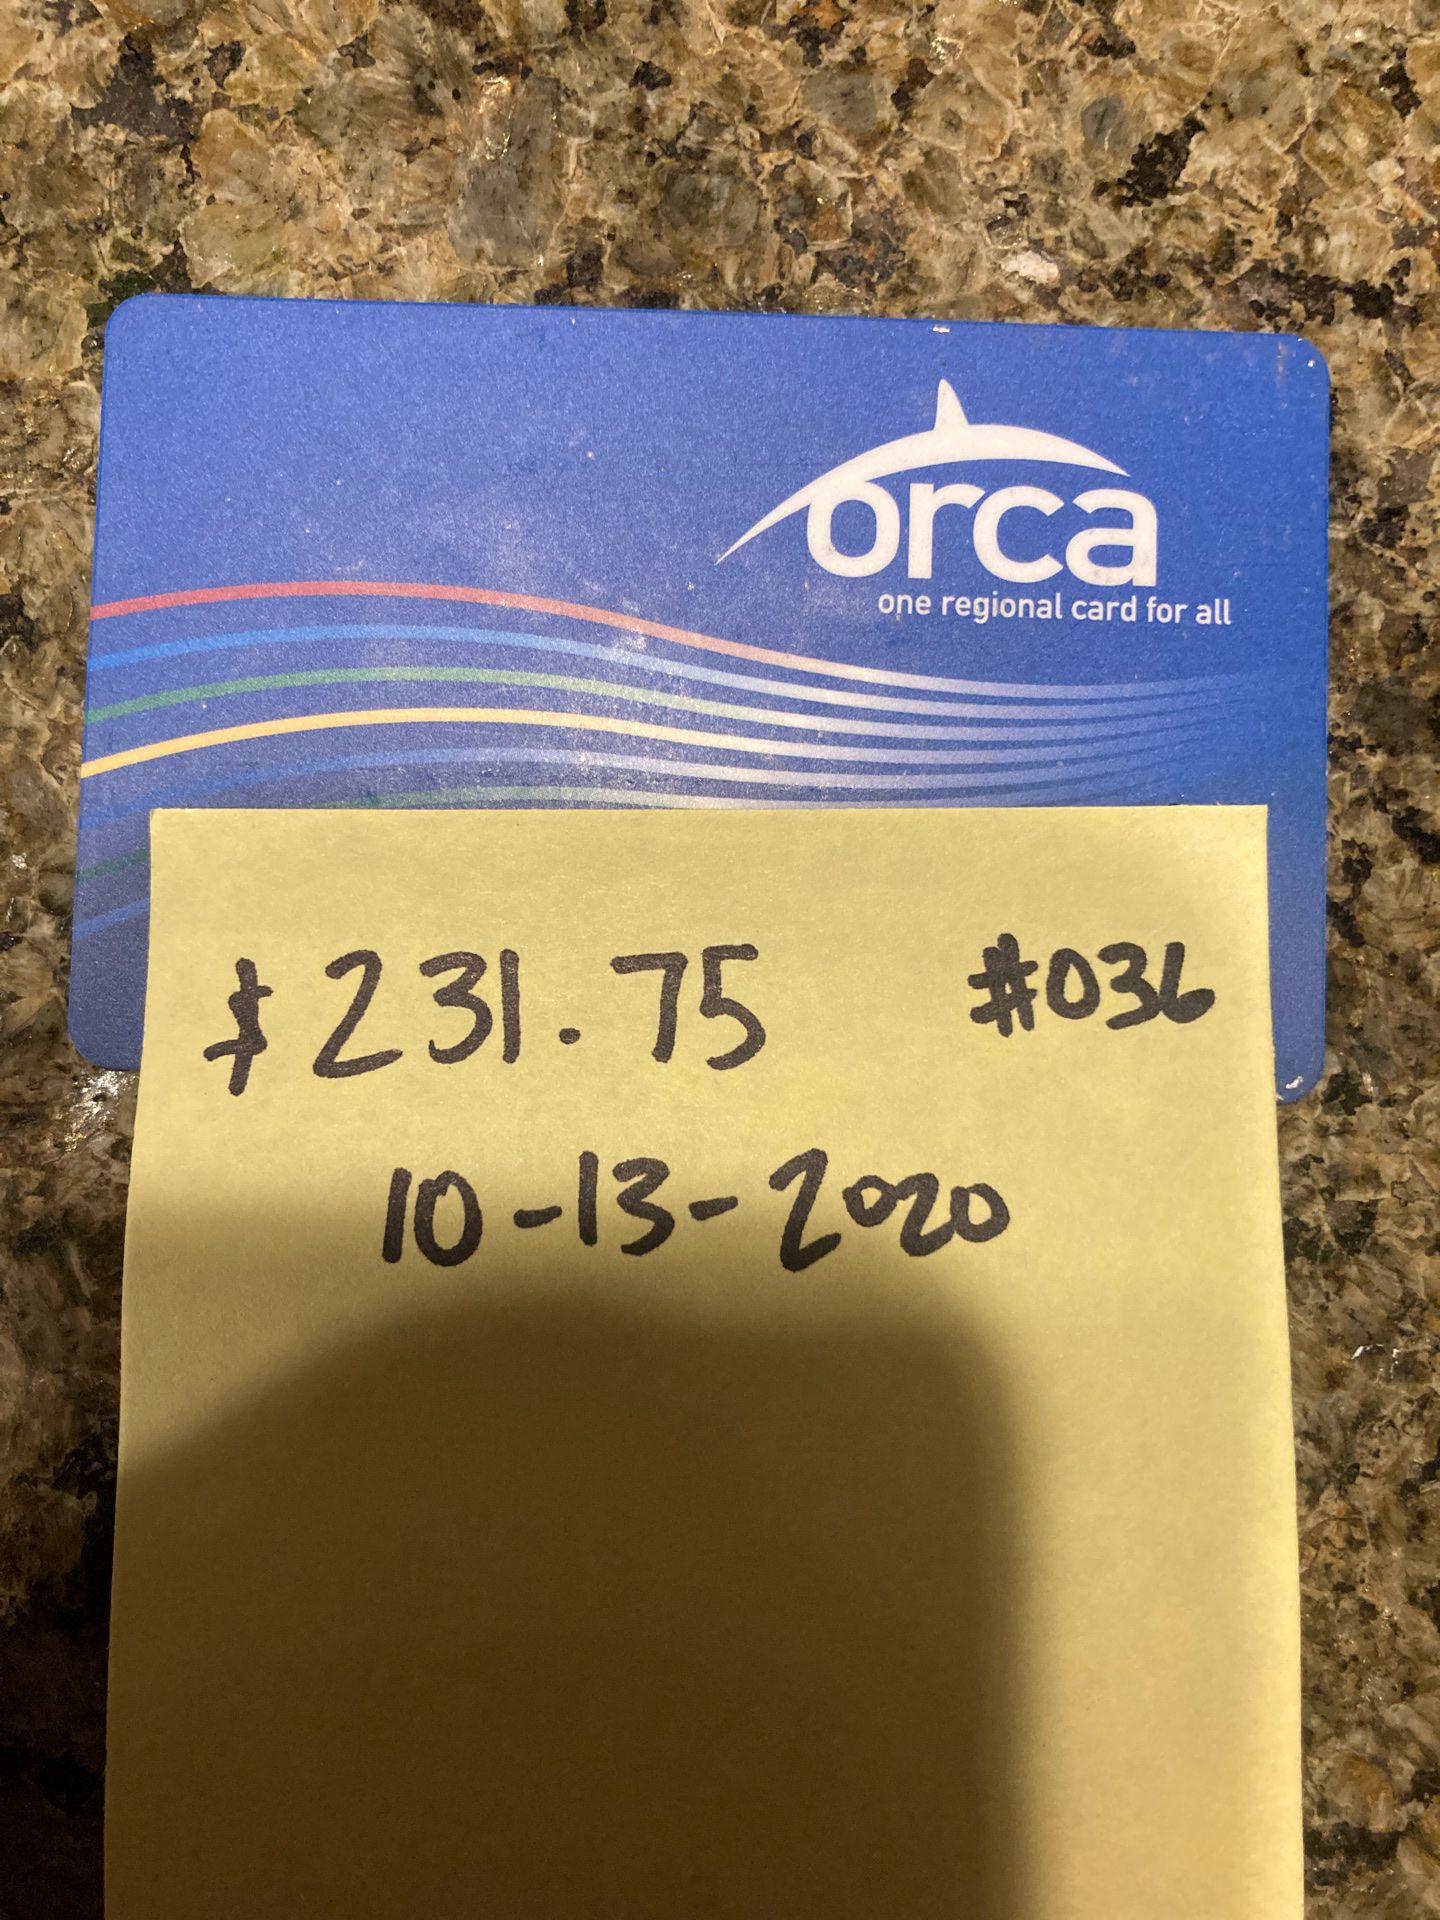 orca card $236.75